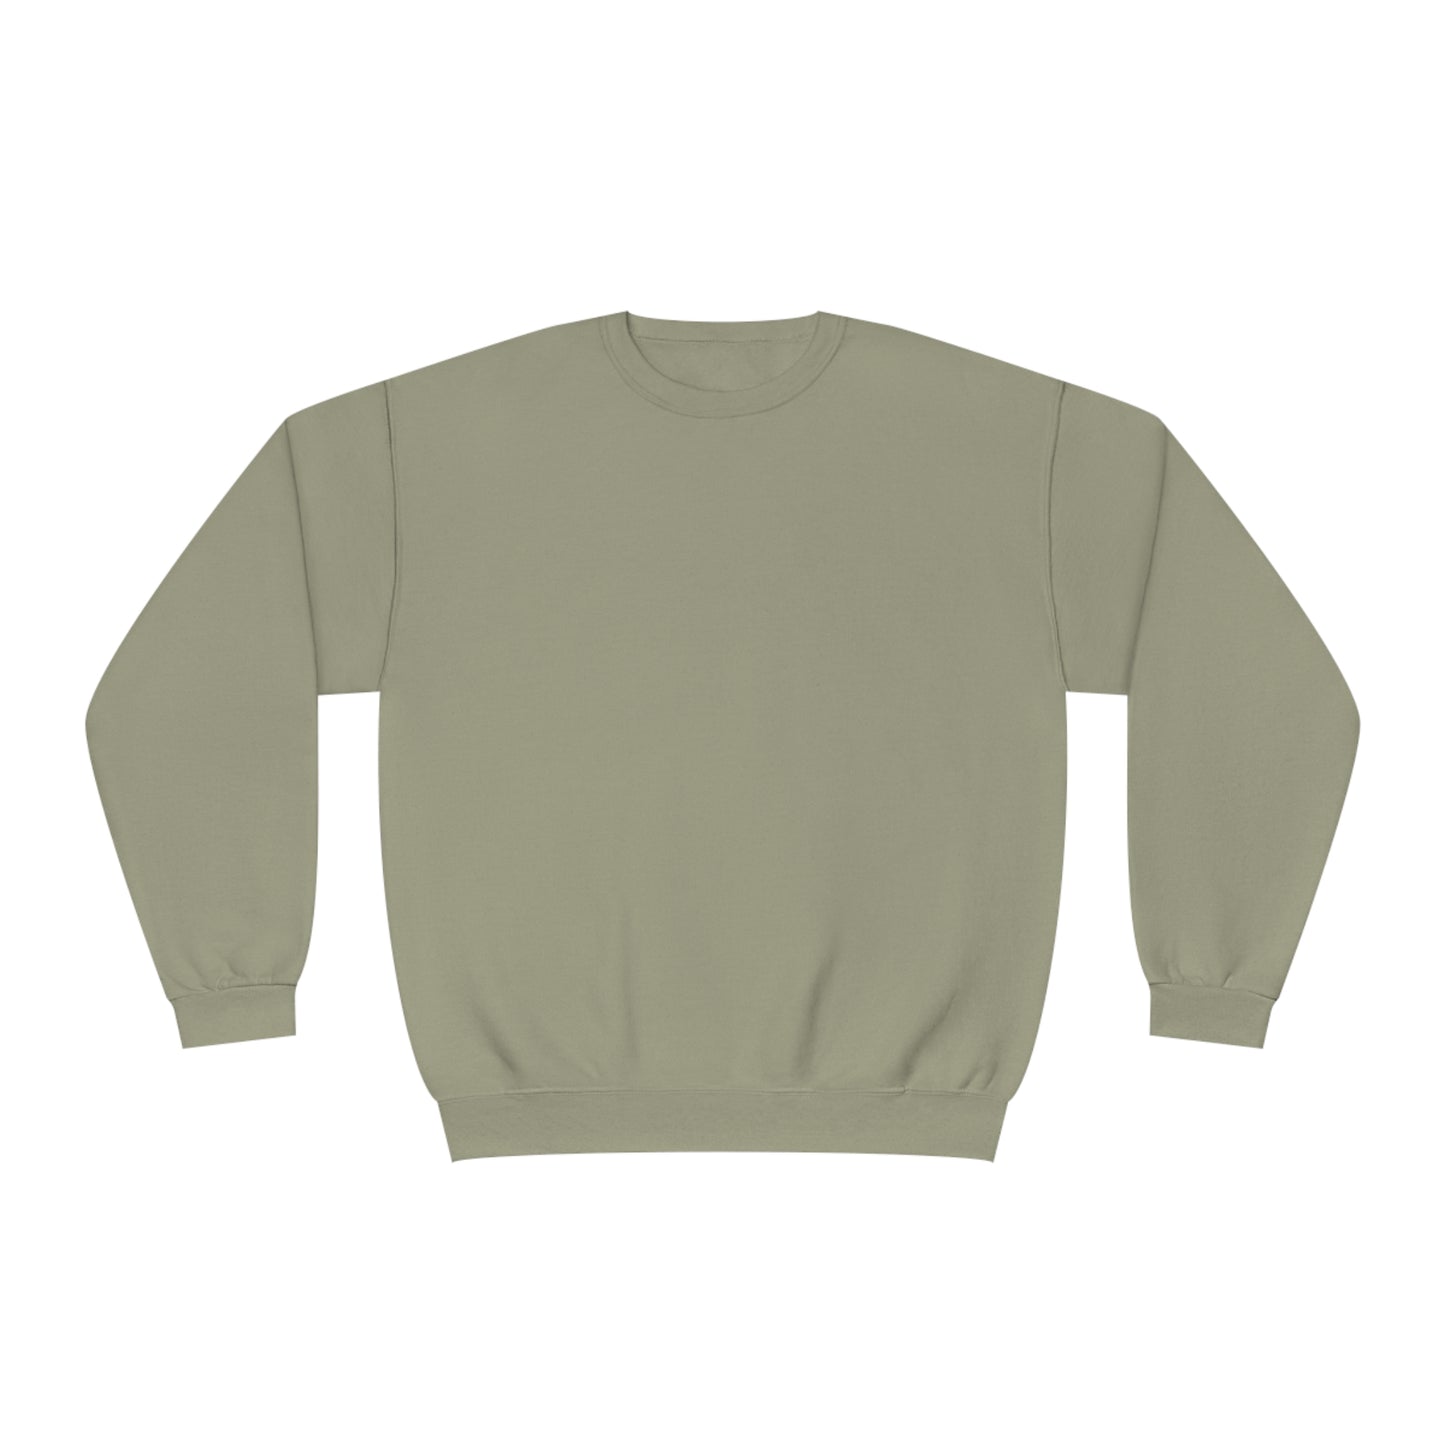 Copy of Pike Mockup 1 Crewneck Sweatshirt